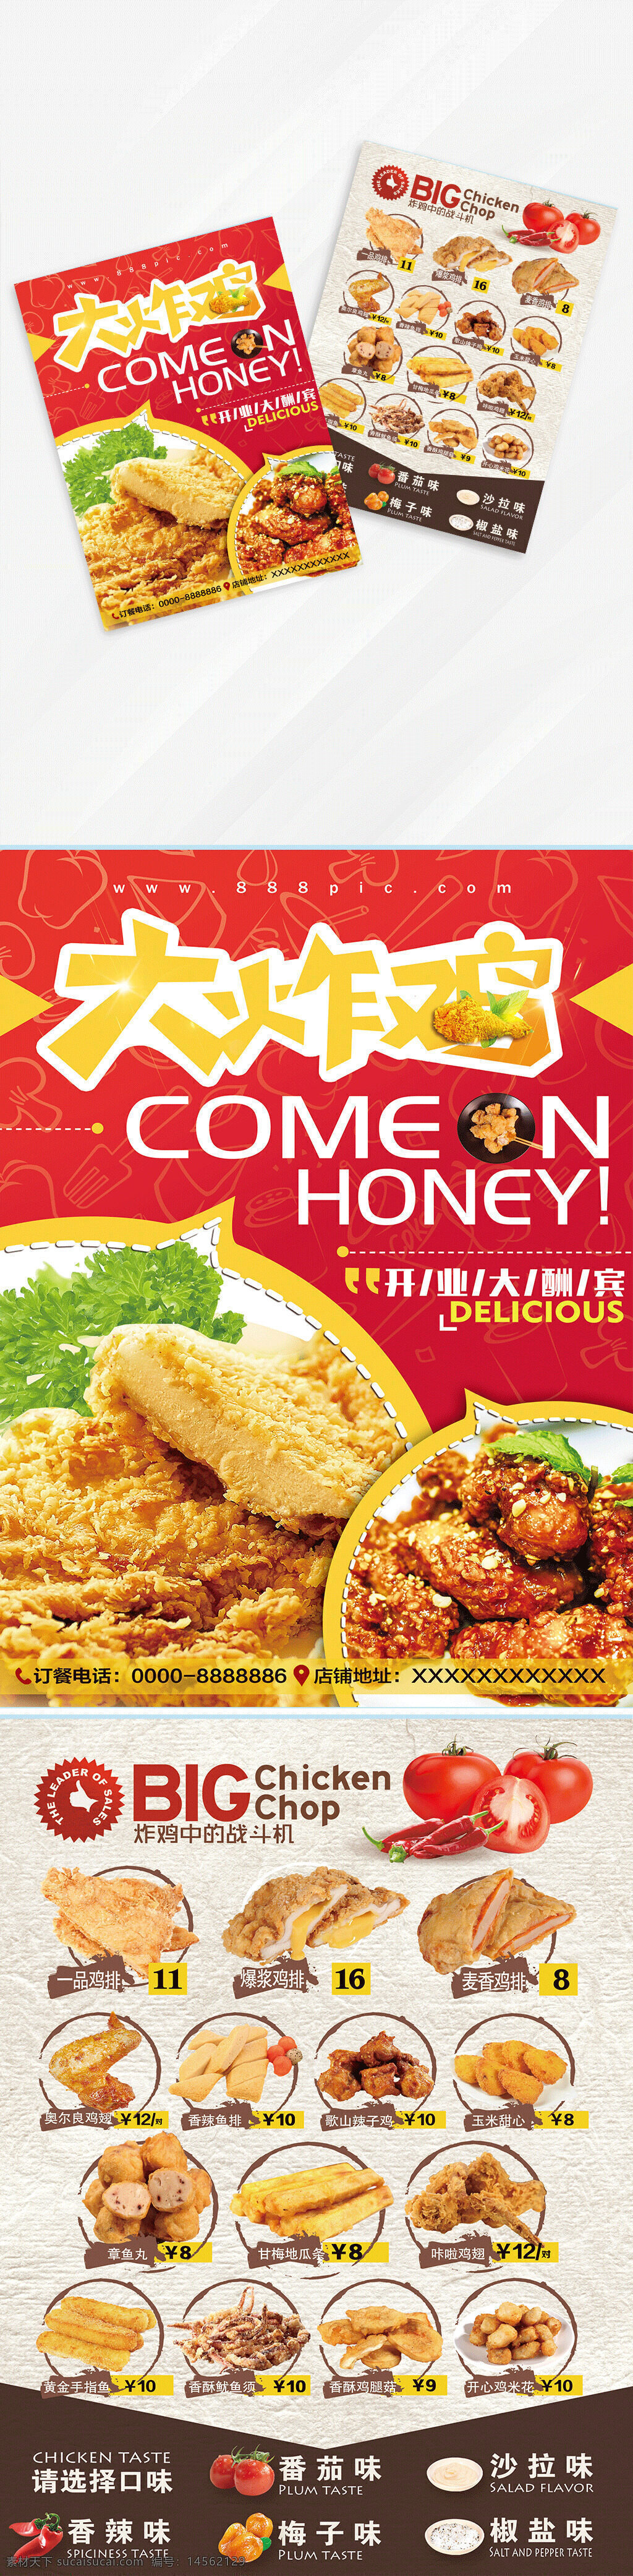 韩式 炸鸡 小吃 套餐 菜单 设计 广告设计 菜单菜谱